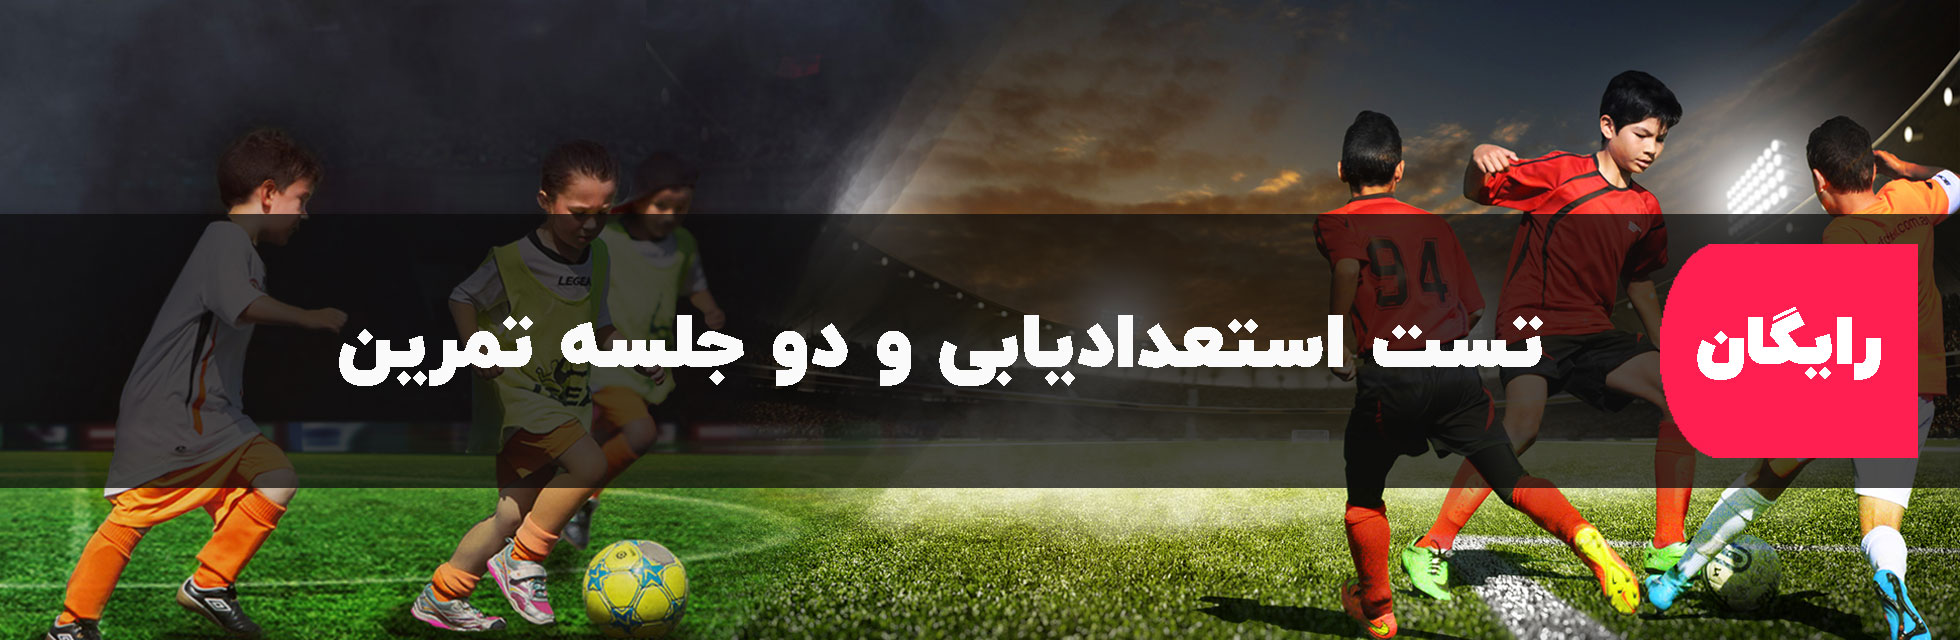 بهترین مدرسه فوتبال در گلشهر کرج